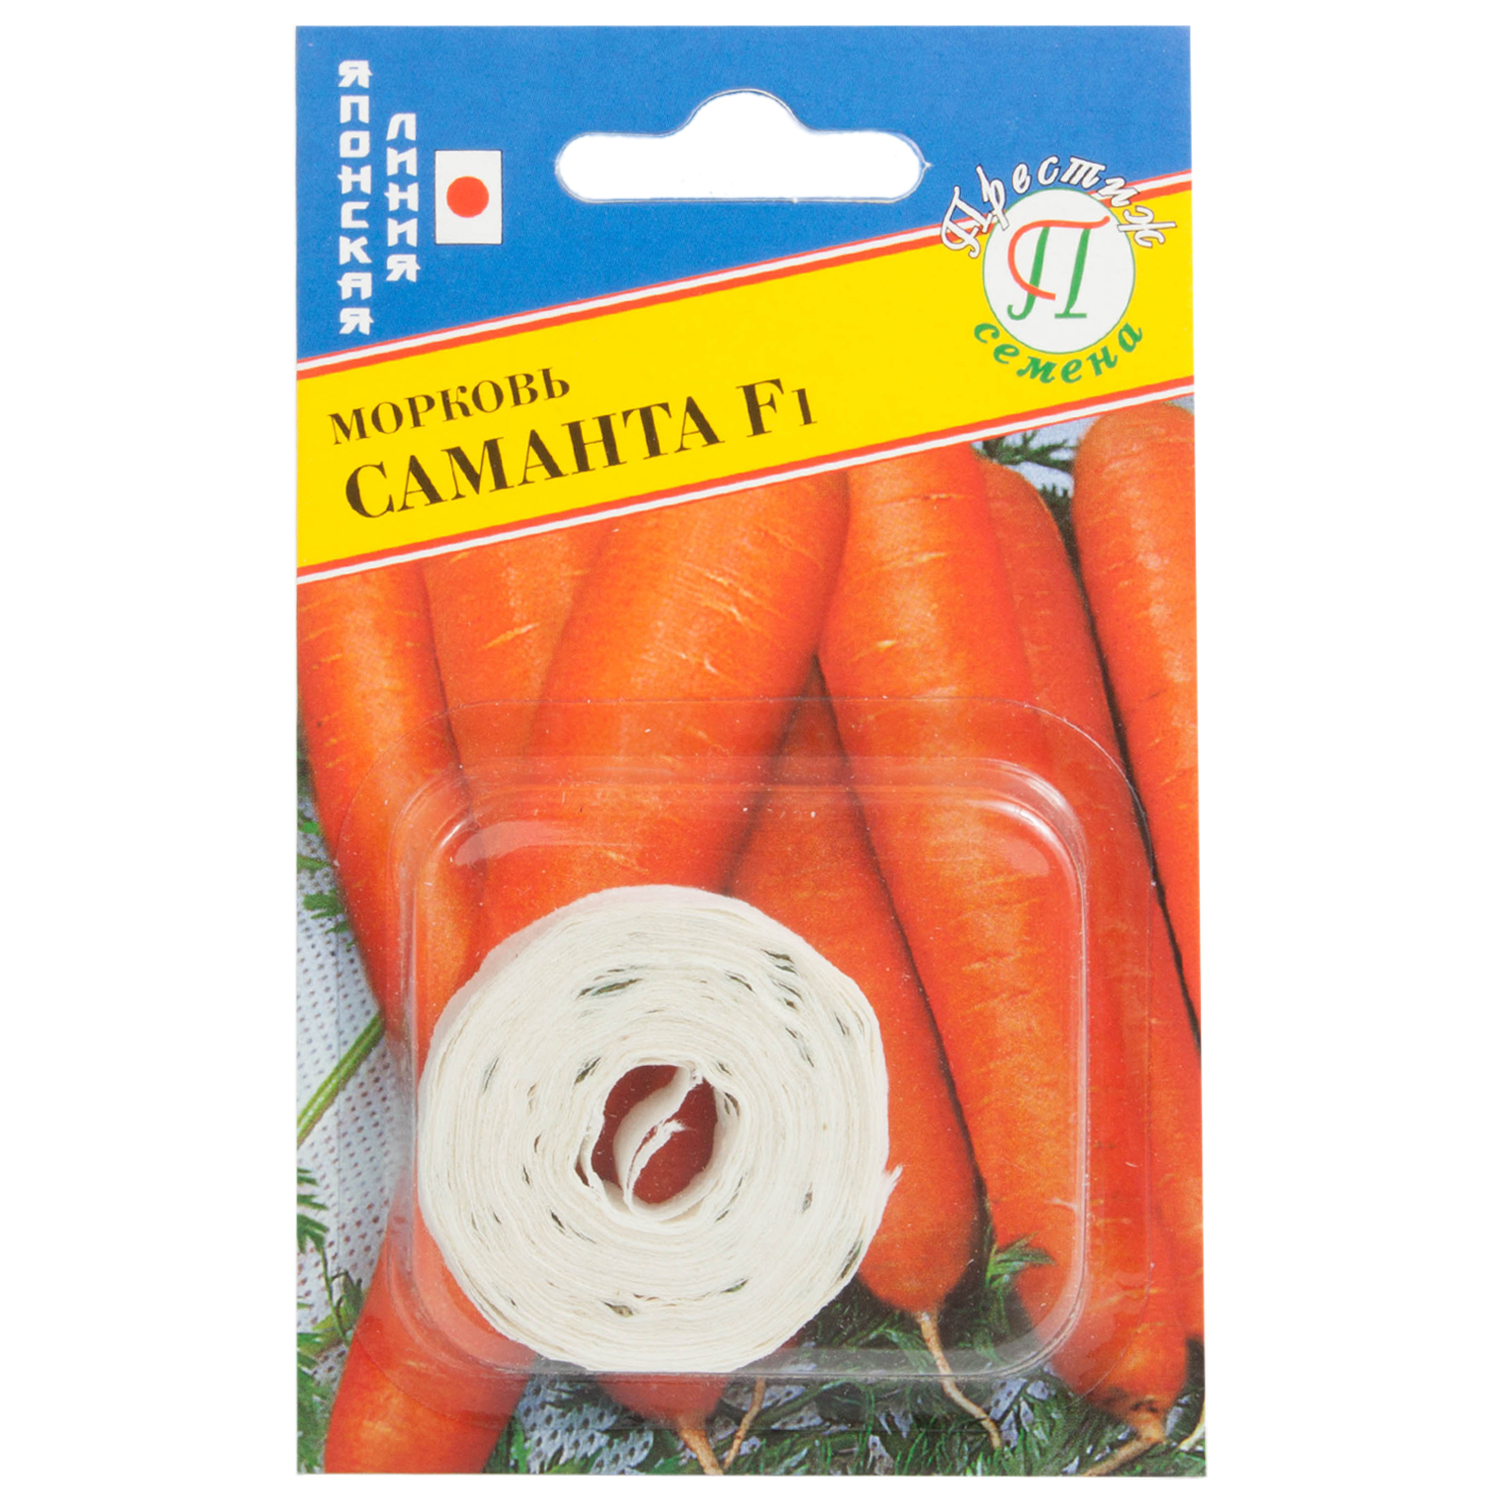 Семена морковь на ленте Саманта F1 6м Престиж